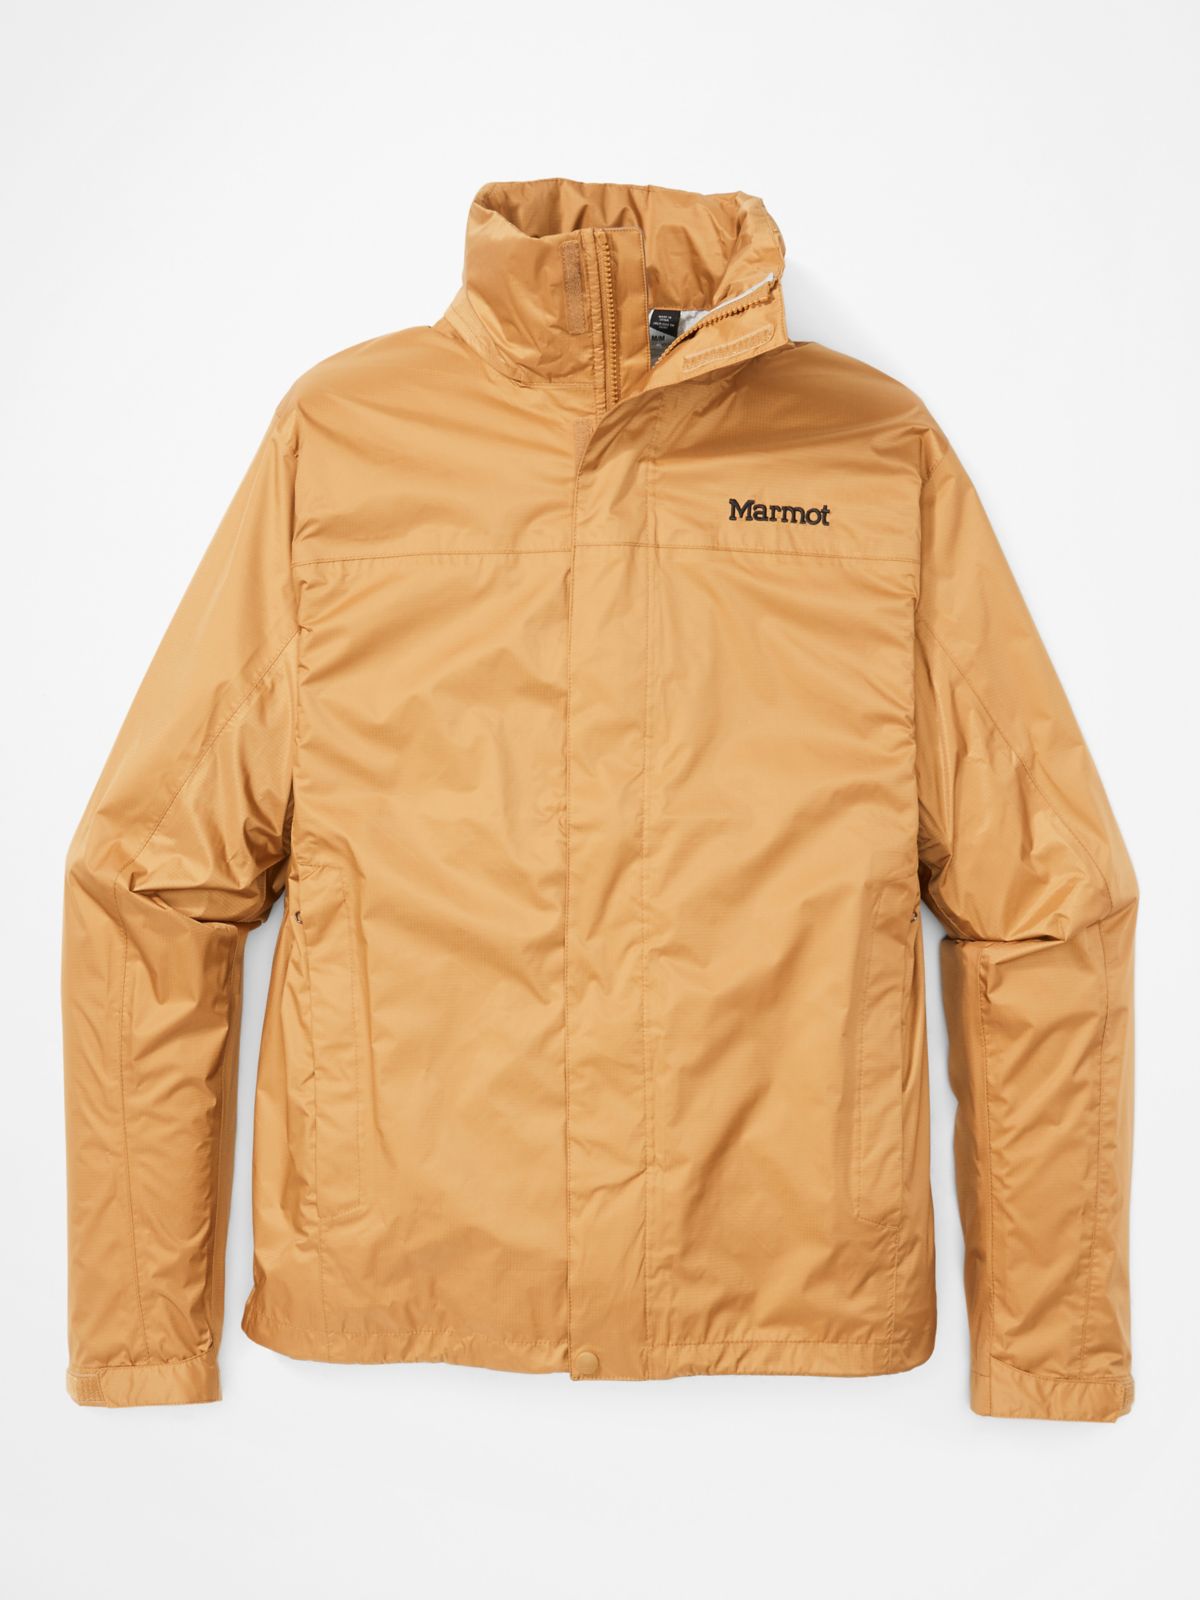 Men's PreCip® Eco Jacket